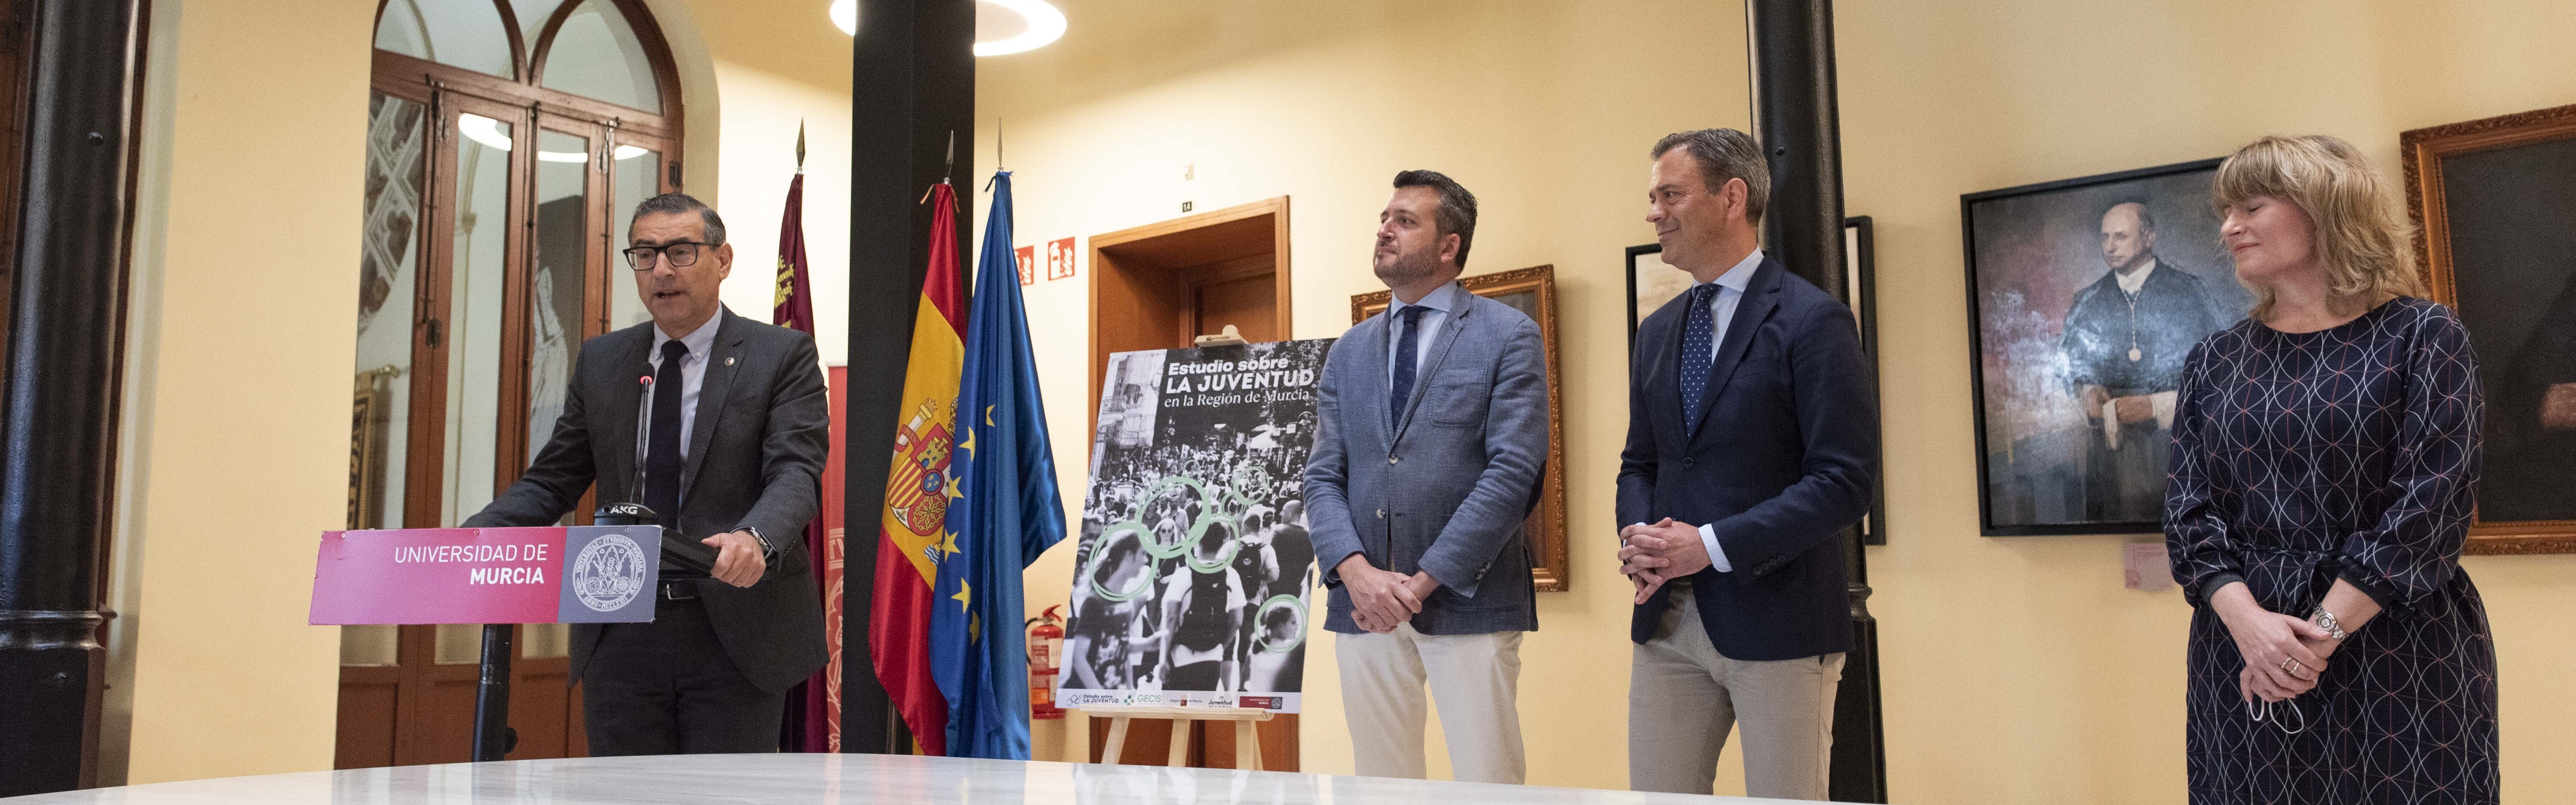 La Universidad de Murcia elaborará la primera radiografía completa de la juventud en la Región de Murcia